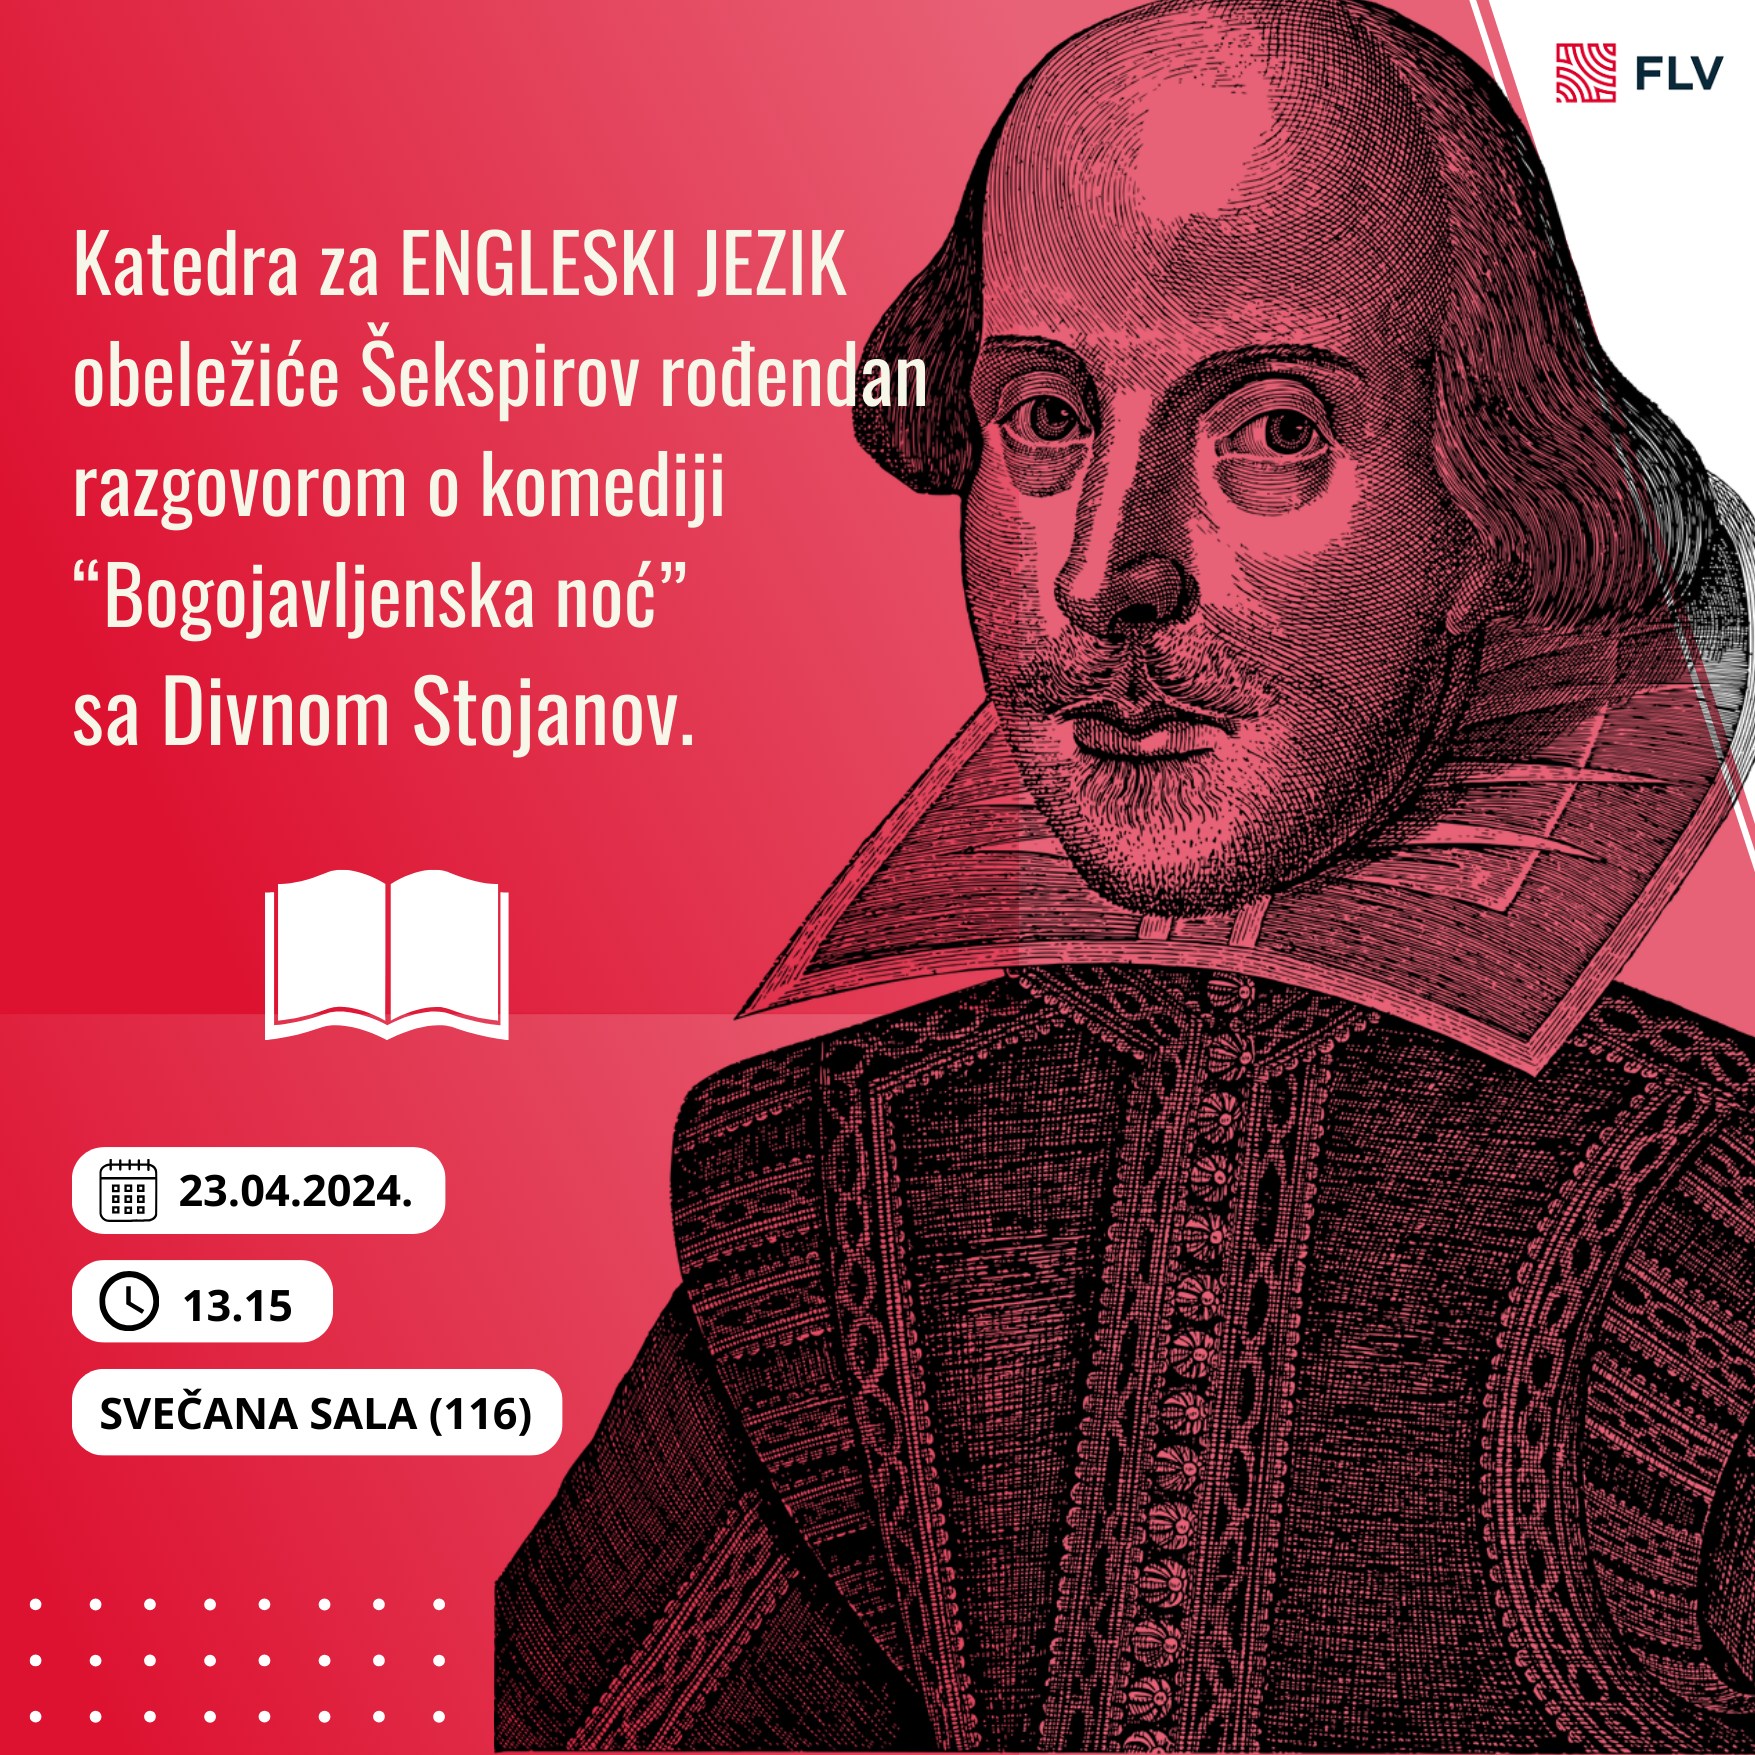 O našoj “Bogojavljenskoj” povodom Šekspirovog rođendana